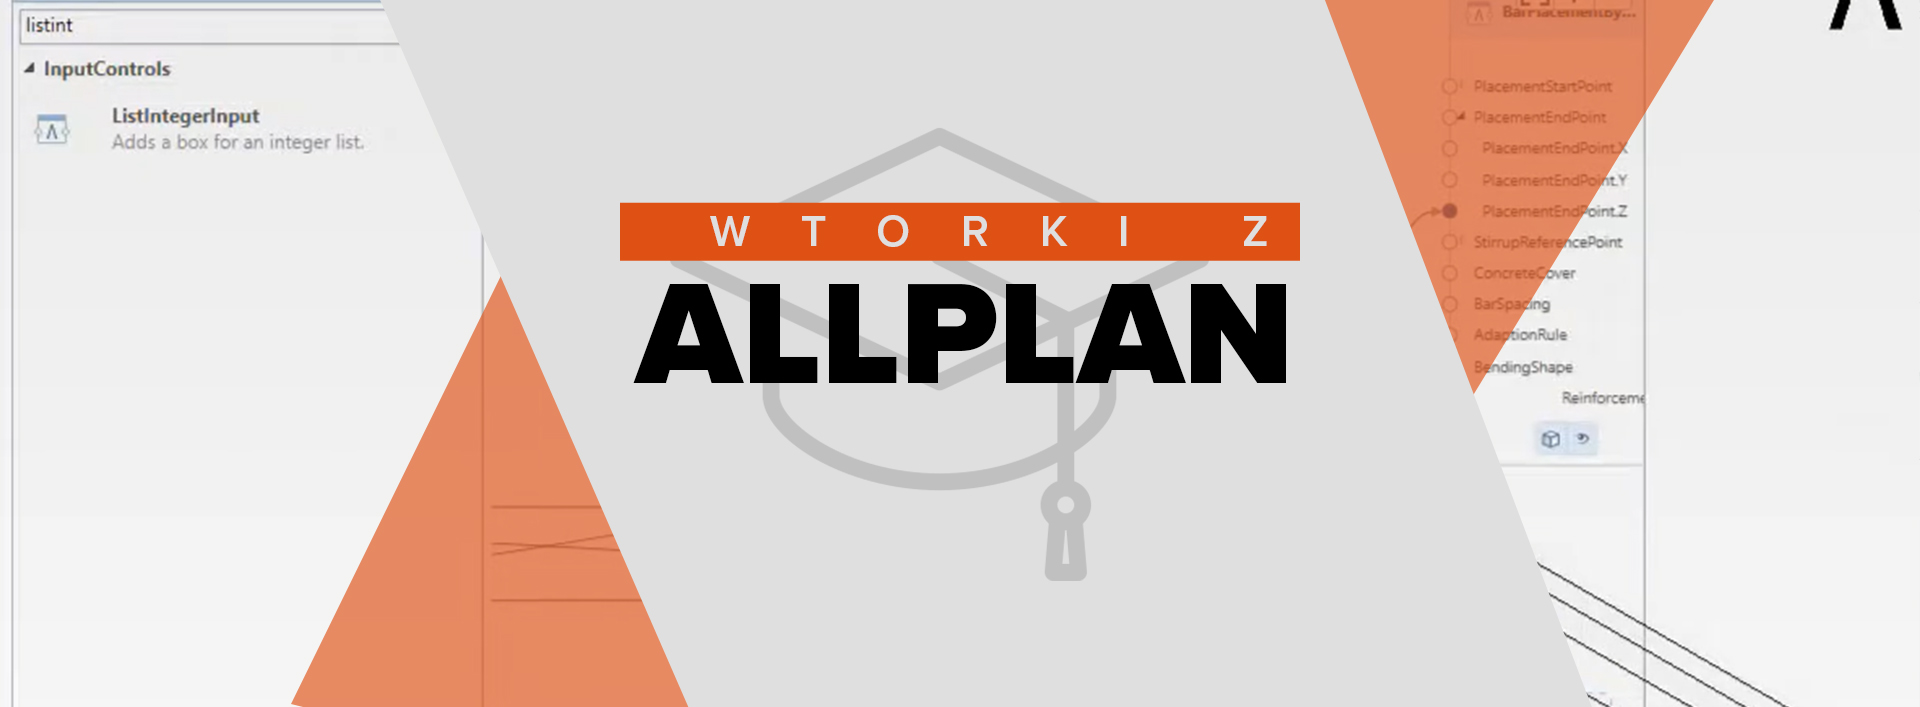 Nowe webinary z serii „Wtorki z Allplan” już czekają na Ciebie!